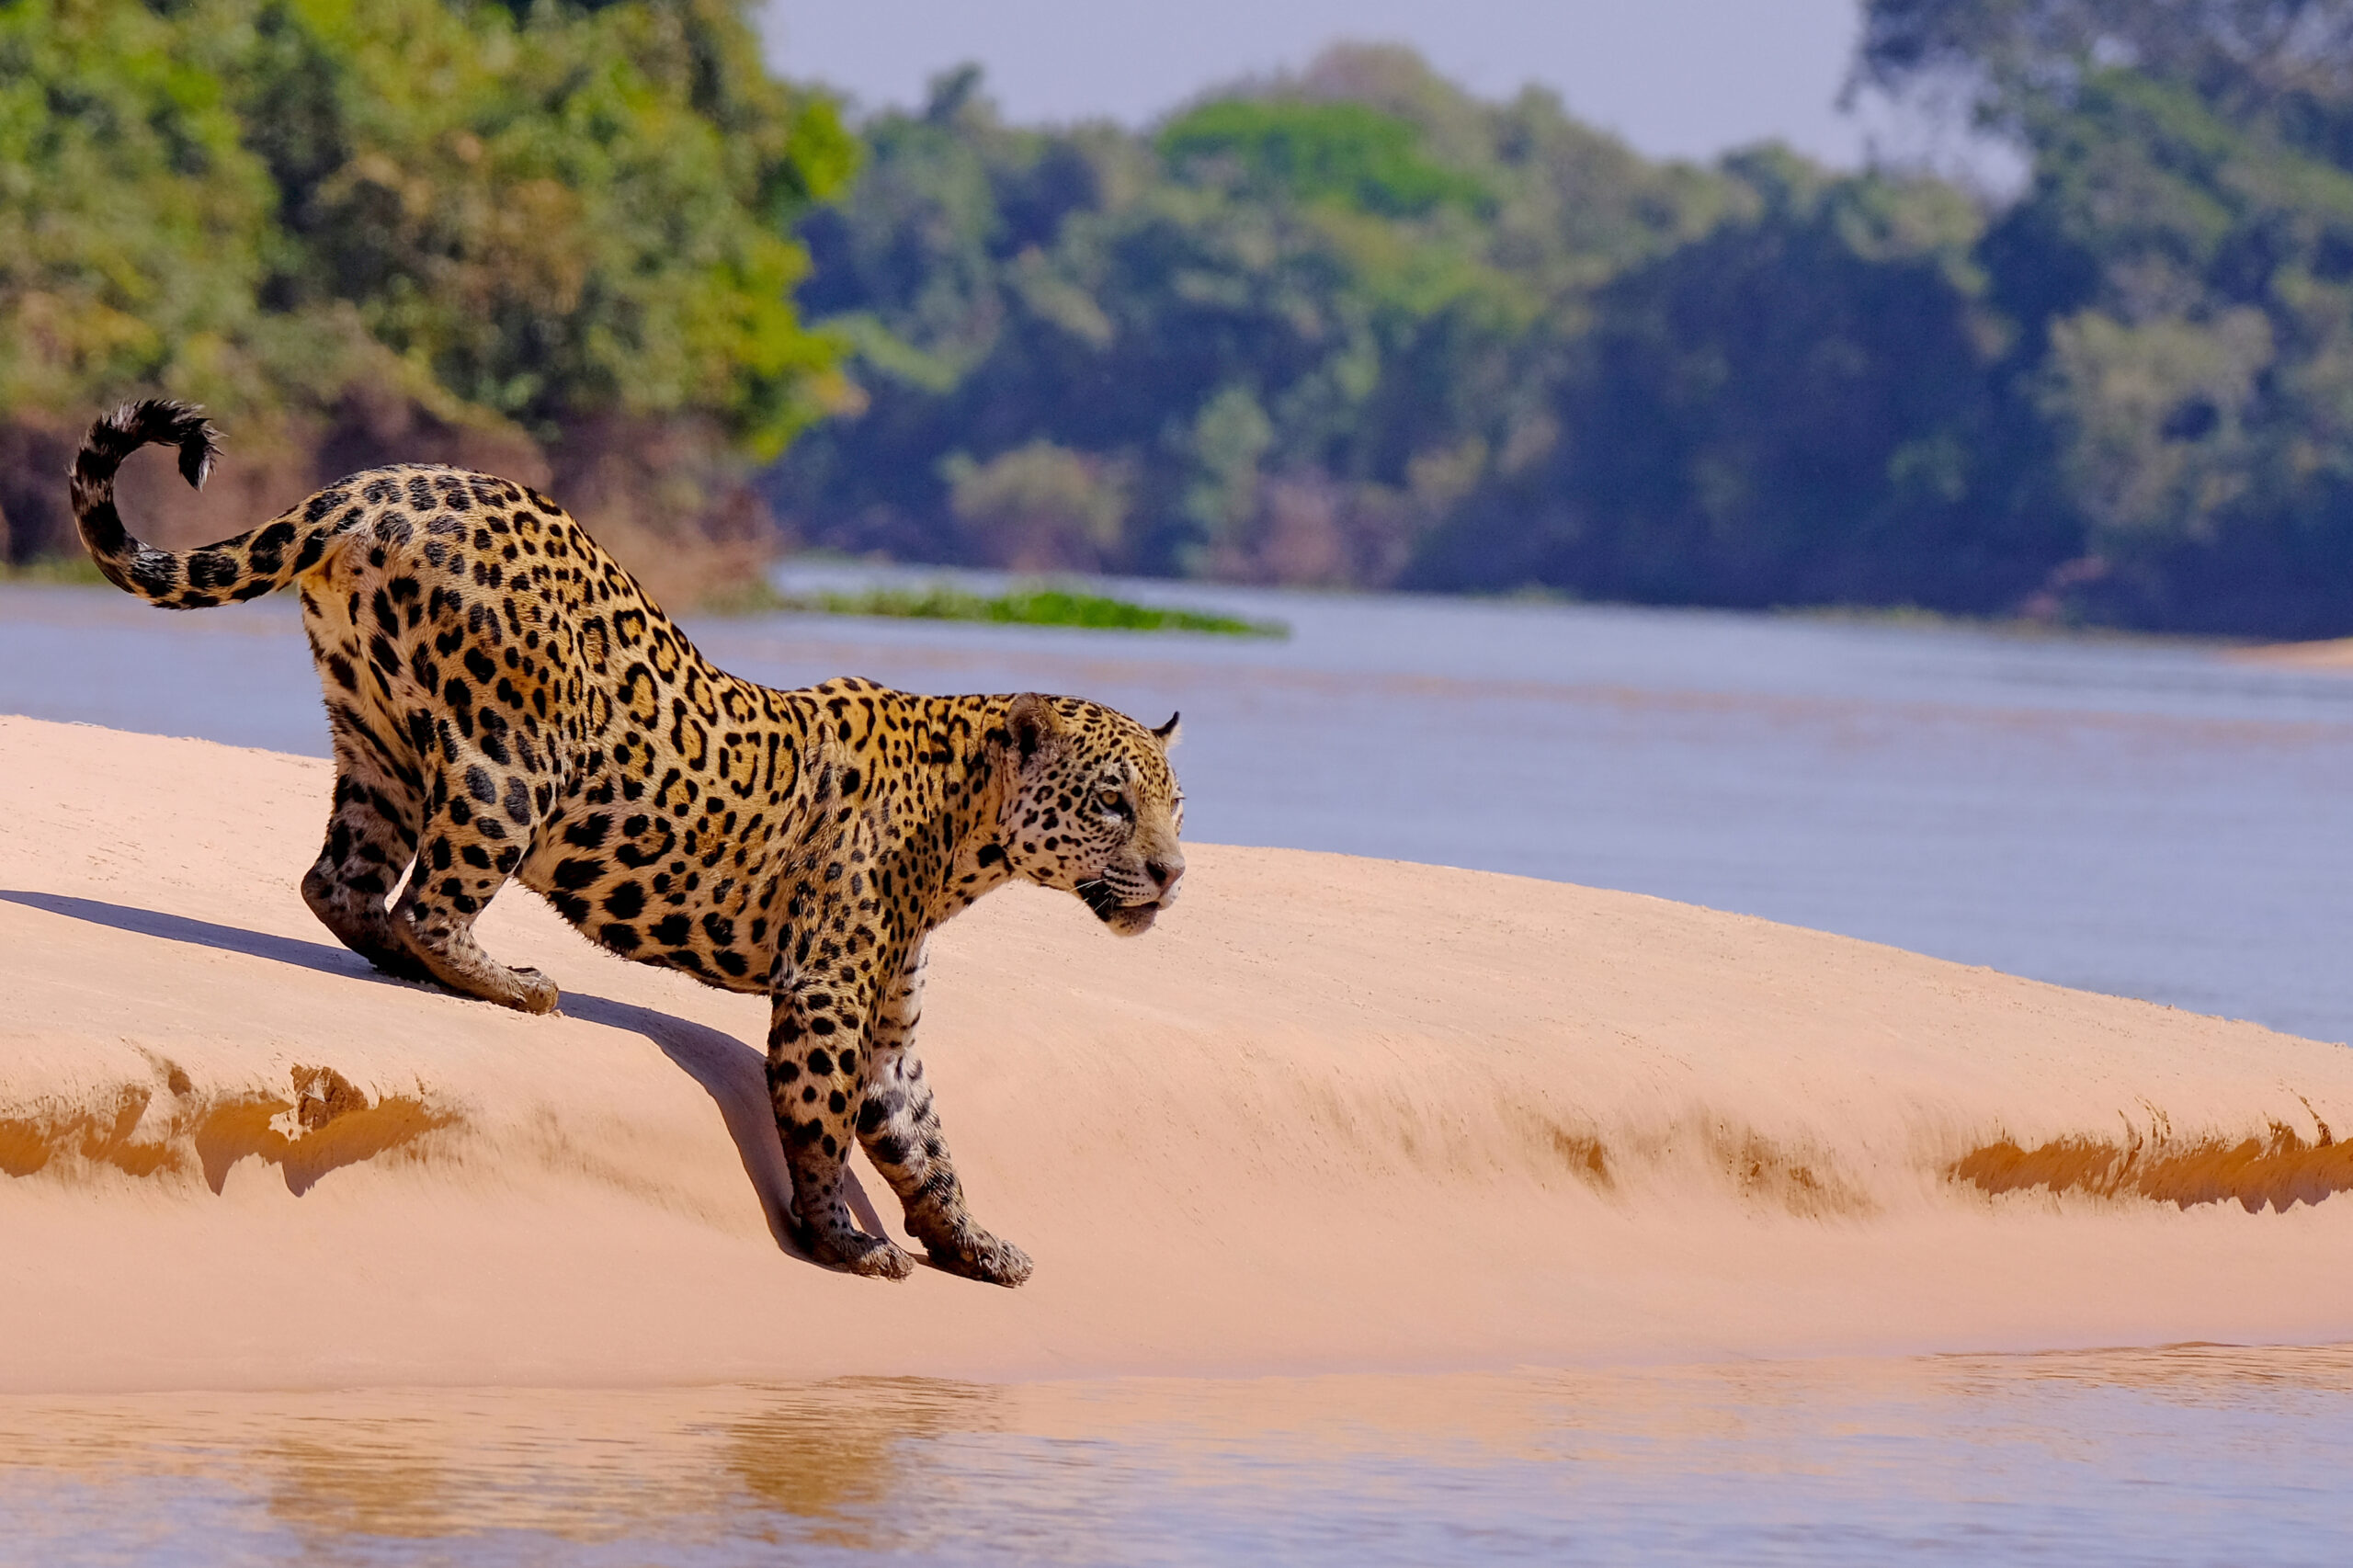 Jaguar on the hunt